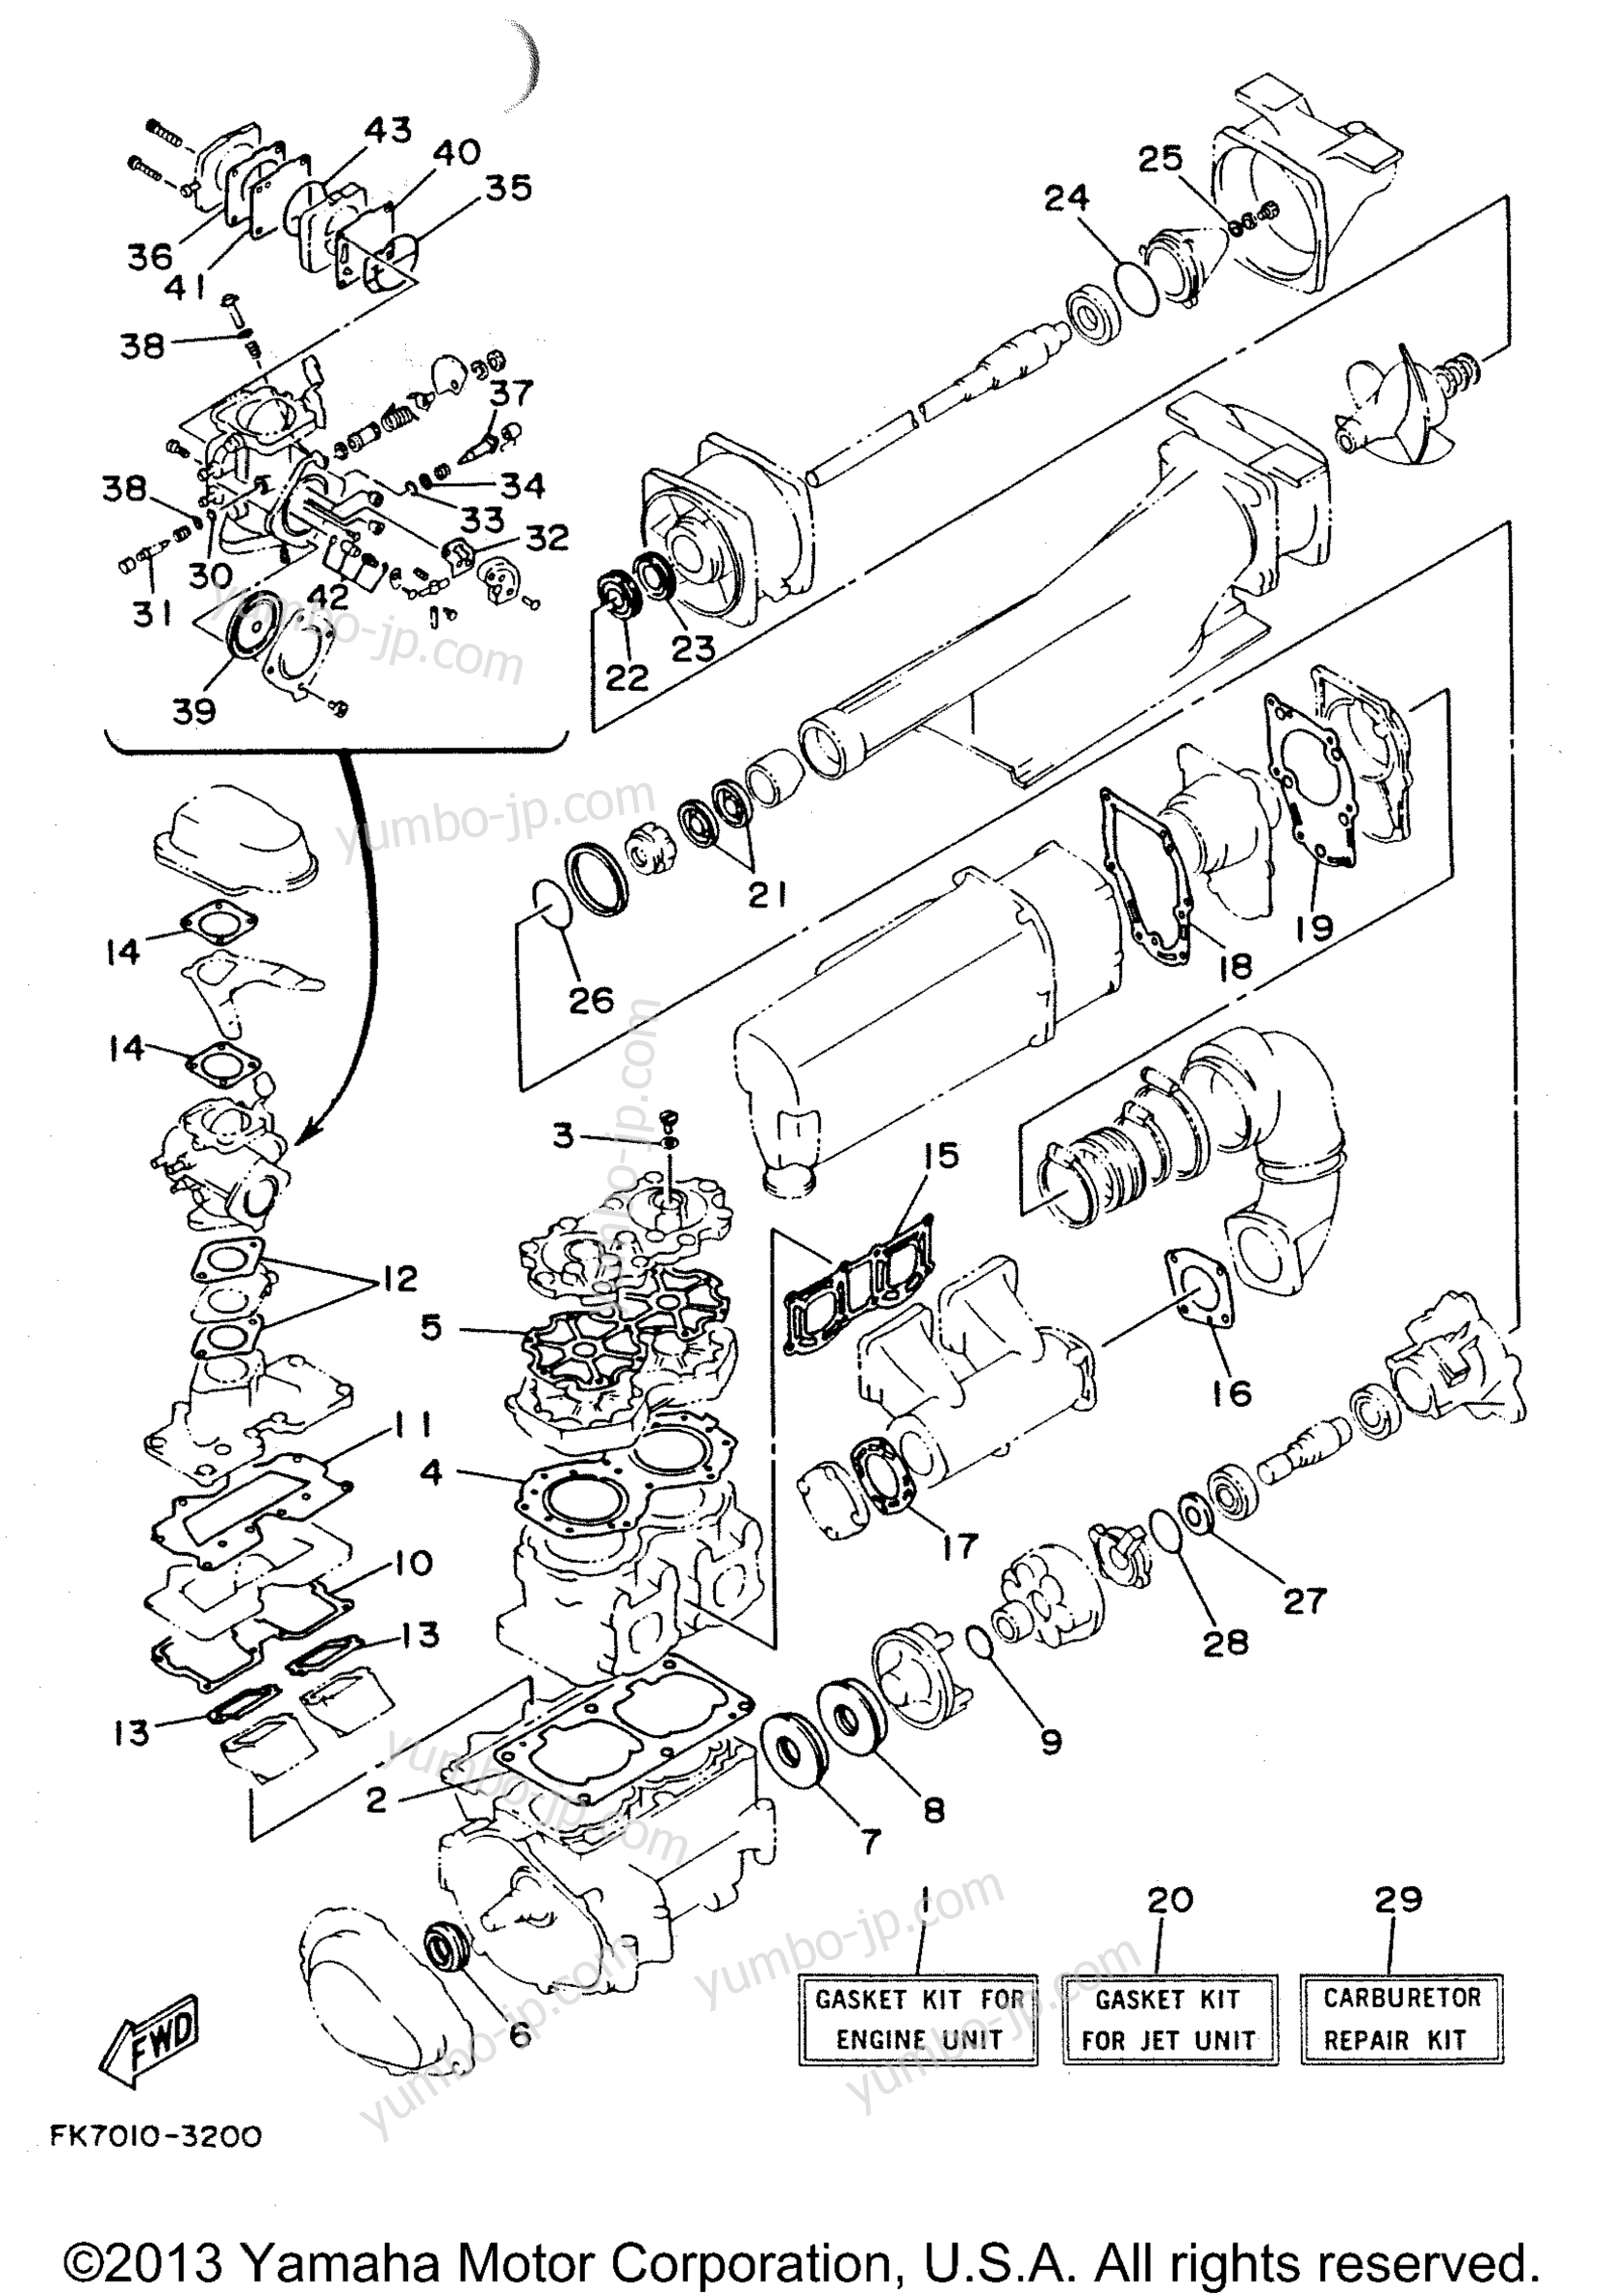 Ремкомплект / Набор прокладок для гидроциклов YAMAHA WAVERUNNER LX (WR650R) 1993 г.